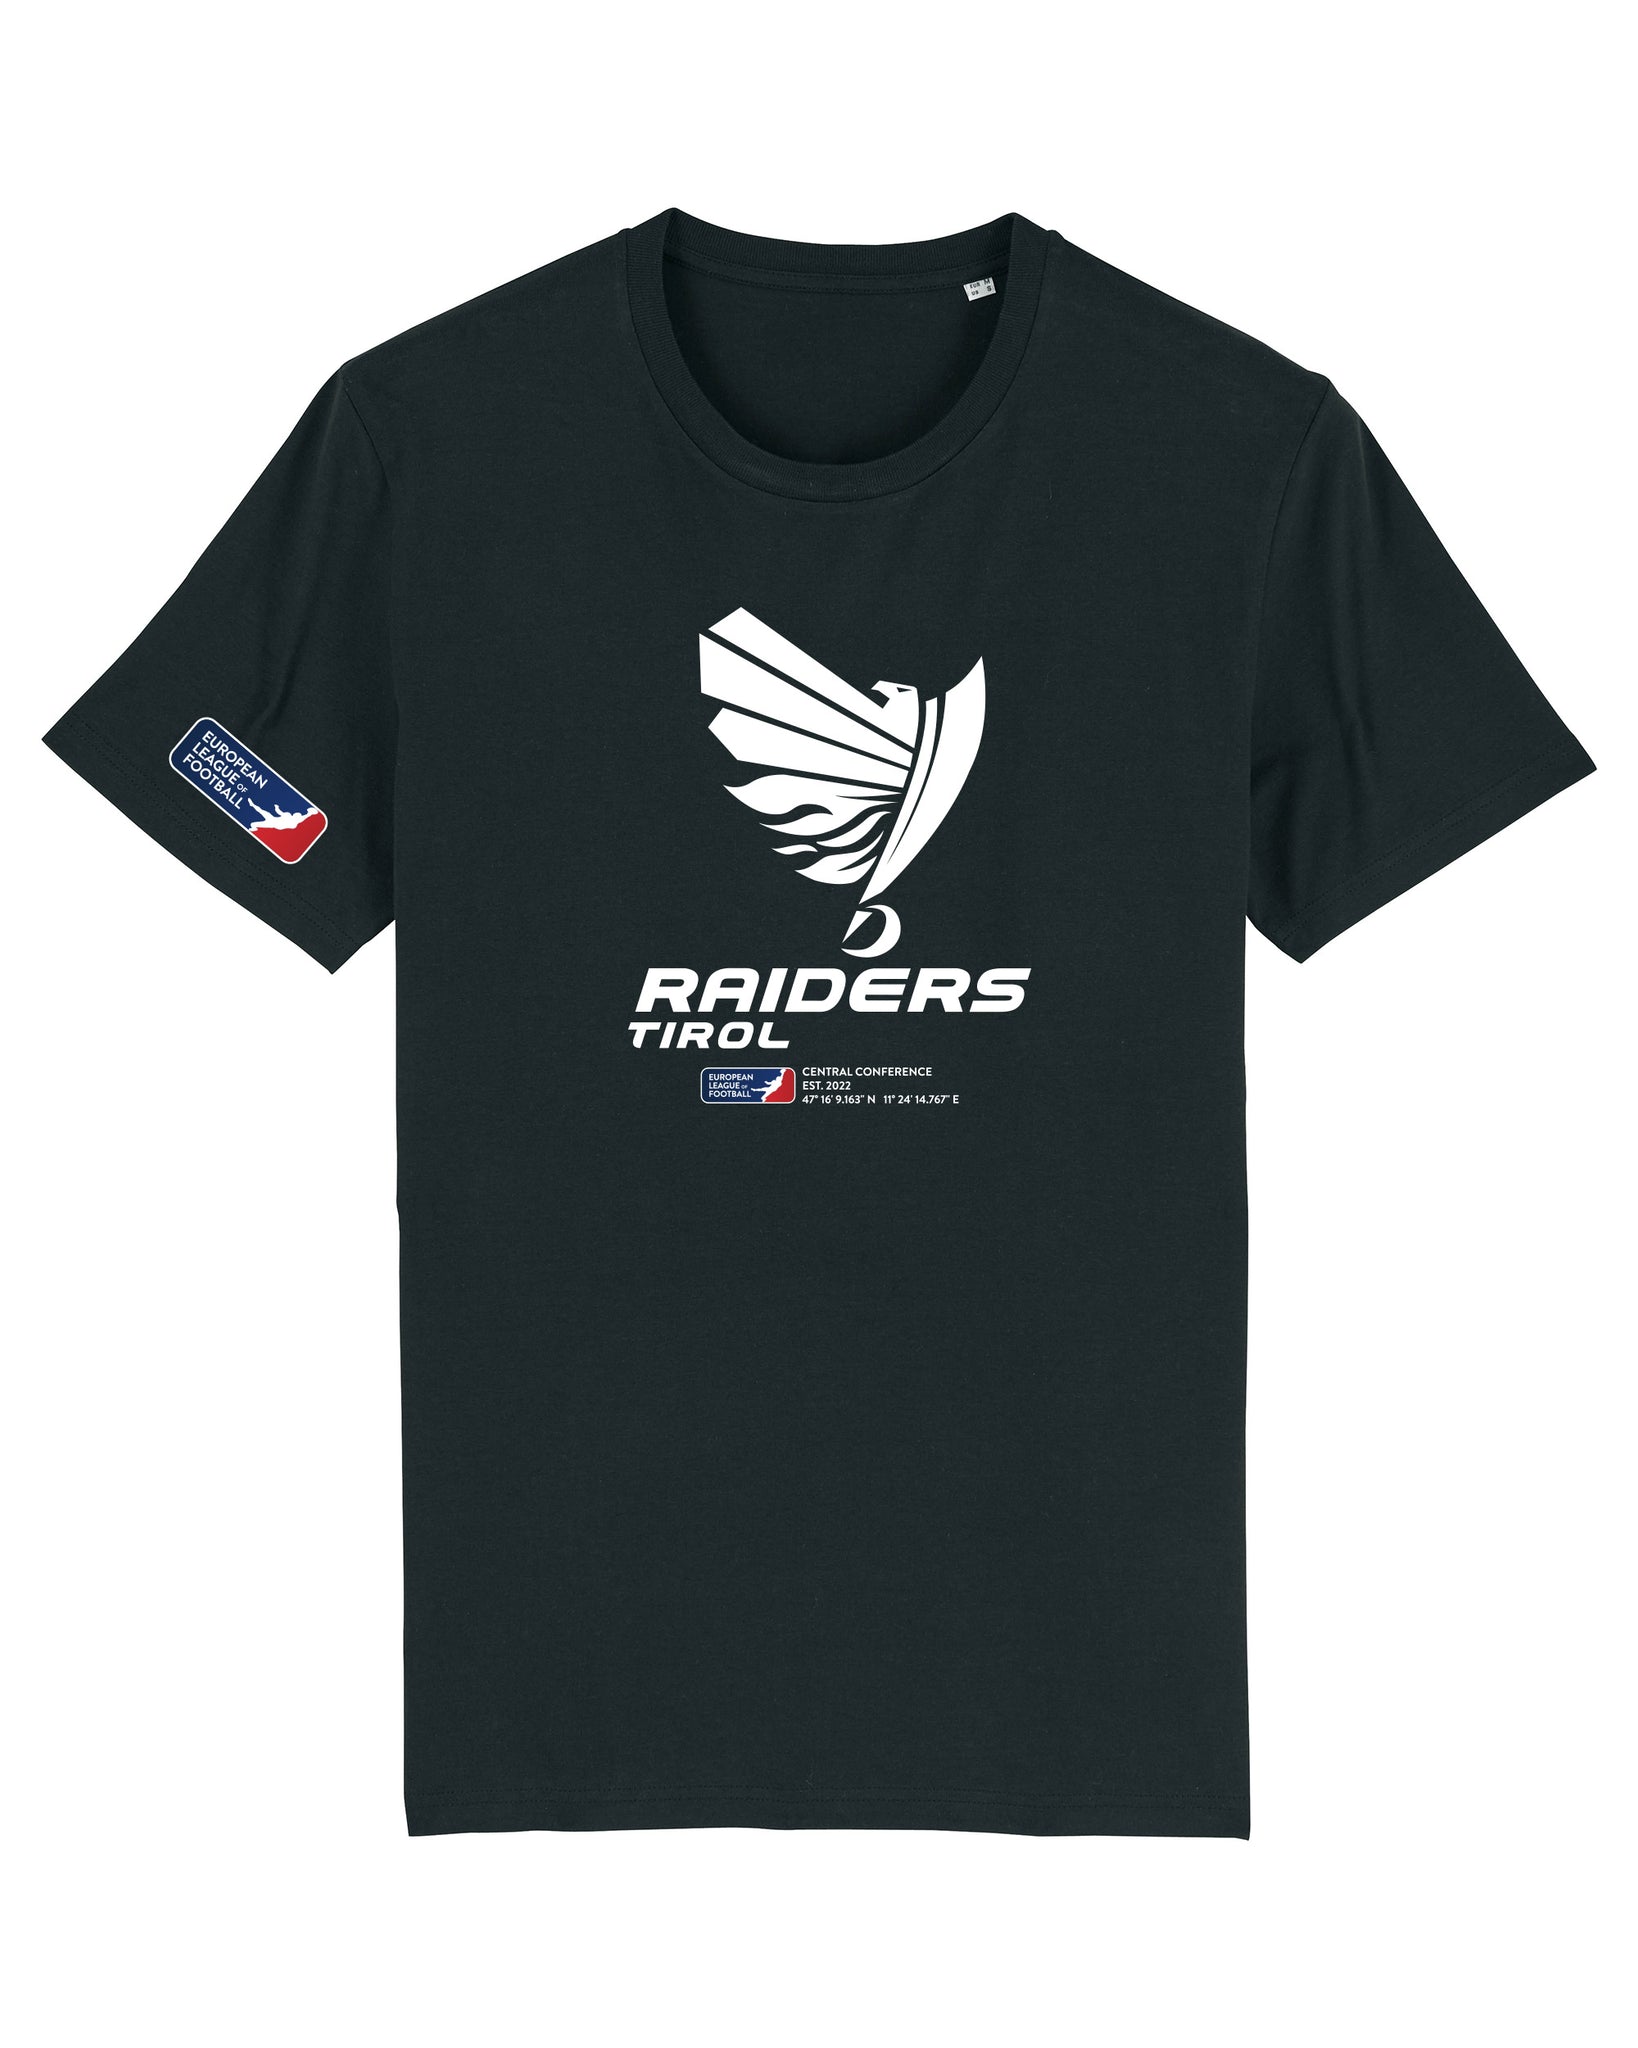 Raiders Tirol DNA T-Shirt 2022